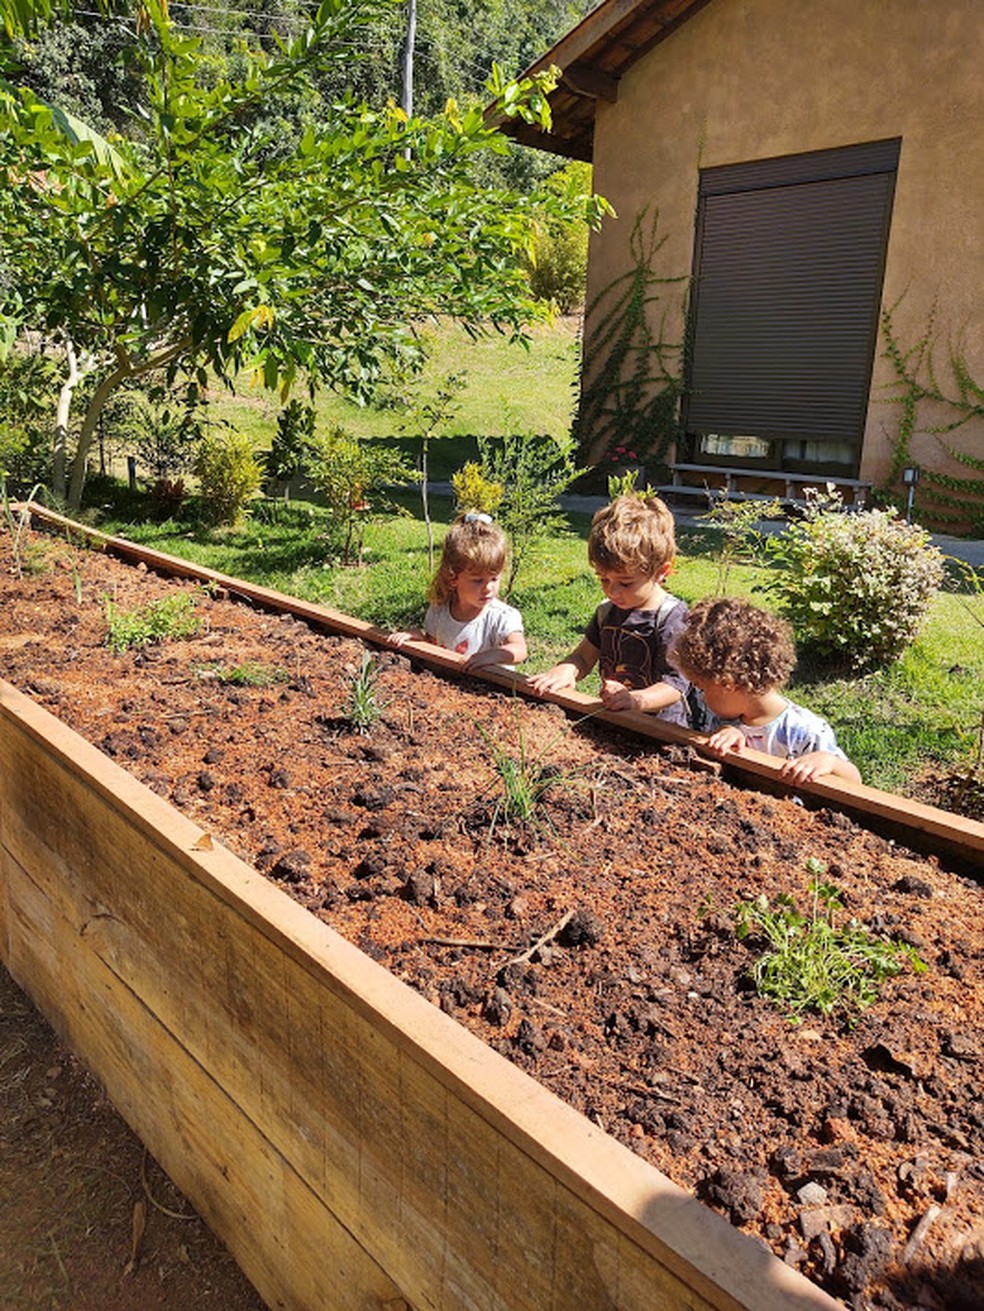 Mãozinhas na terra: as crianças ajudam no plantio da horta. — Foto: Fernanda Caloi/ Acervo Pessoal